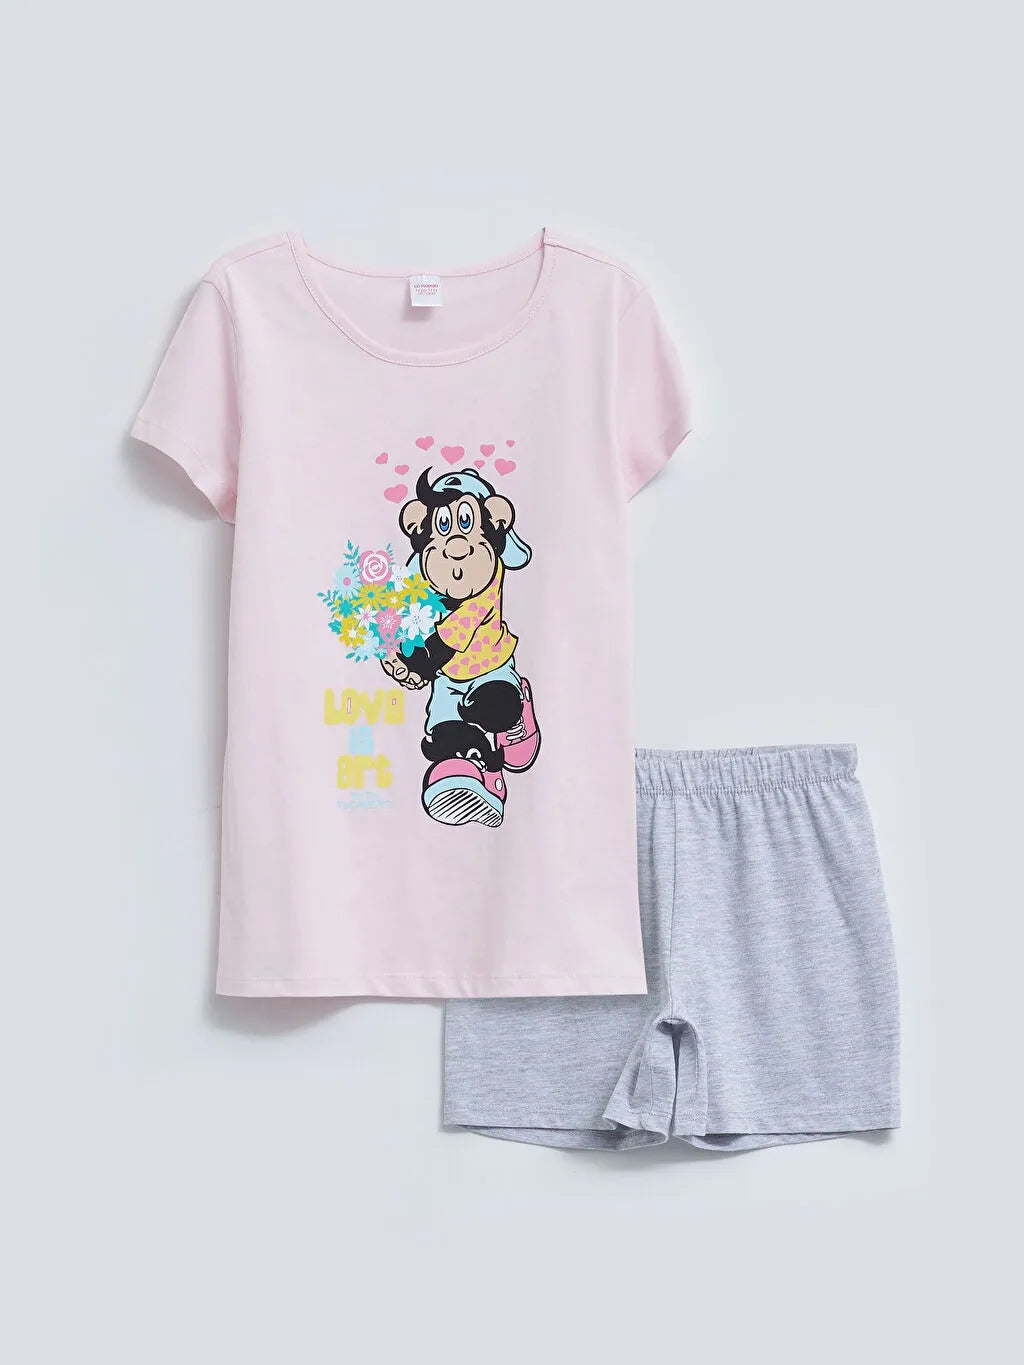 Crew Neck Nostalgic Monkey Printed Short Sleeve Girls Shorts Pajamas Set